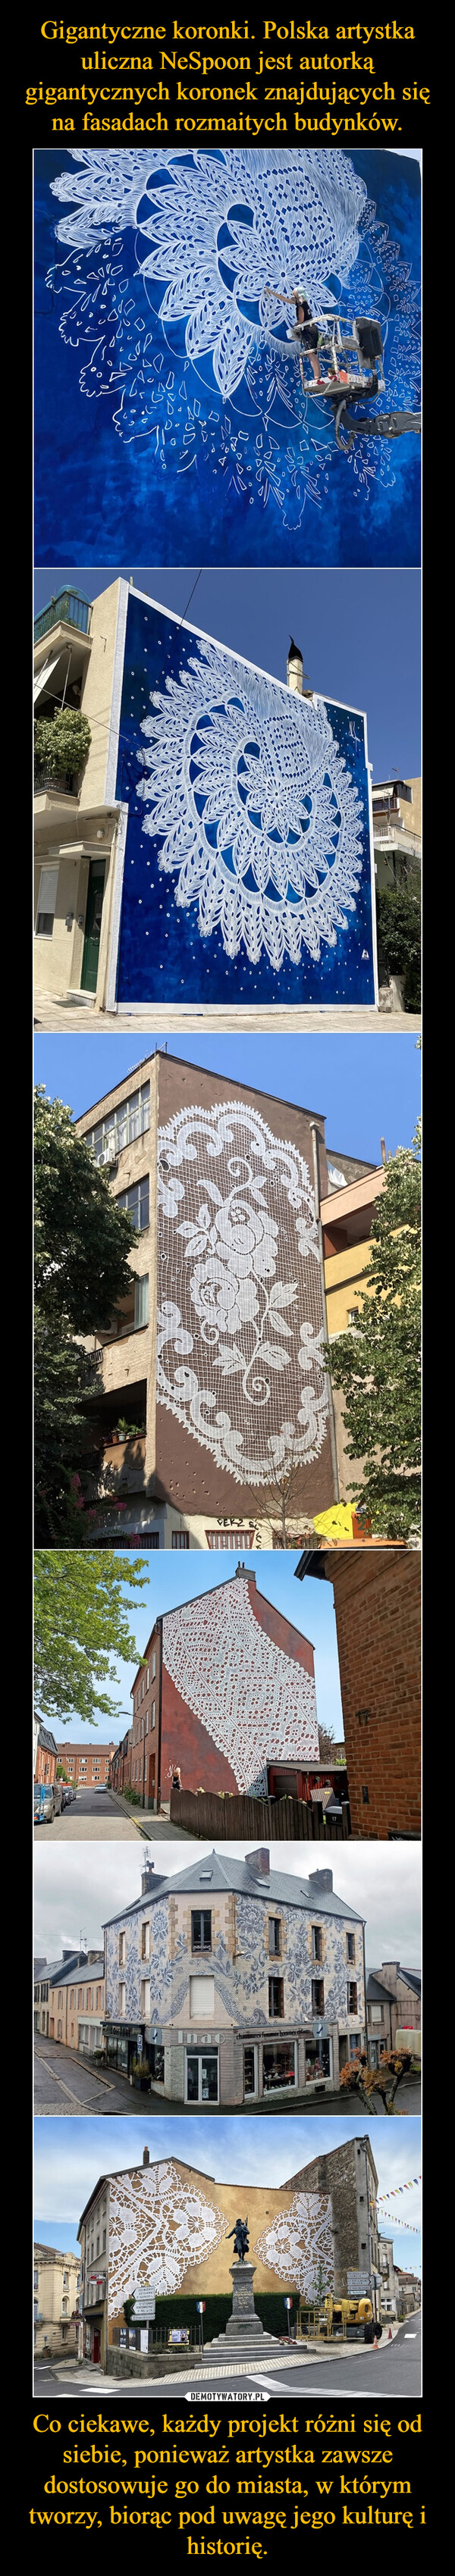 Gigantyczne koronki. Polska artystka uliczna NeSpoon jest autorką gigantycznych koronek znajdujących się na fasadach rozmaitych budynków. Co ciekawe, każdy projekt różni się od siebie, ponieważ artystka zawsze dostosowuje go do miasta, w którym tworzy, biorąc pod uwagę jego kulturę i historię.